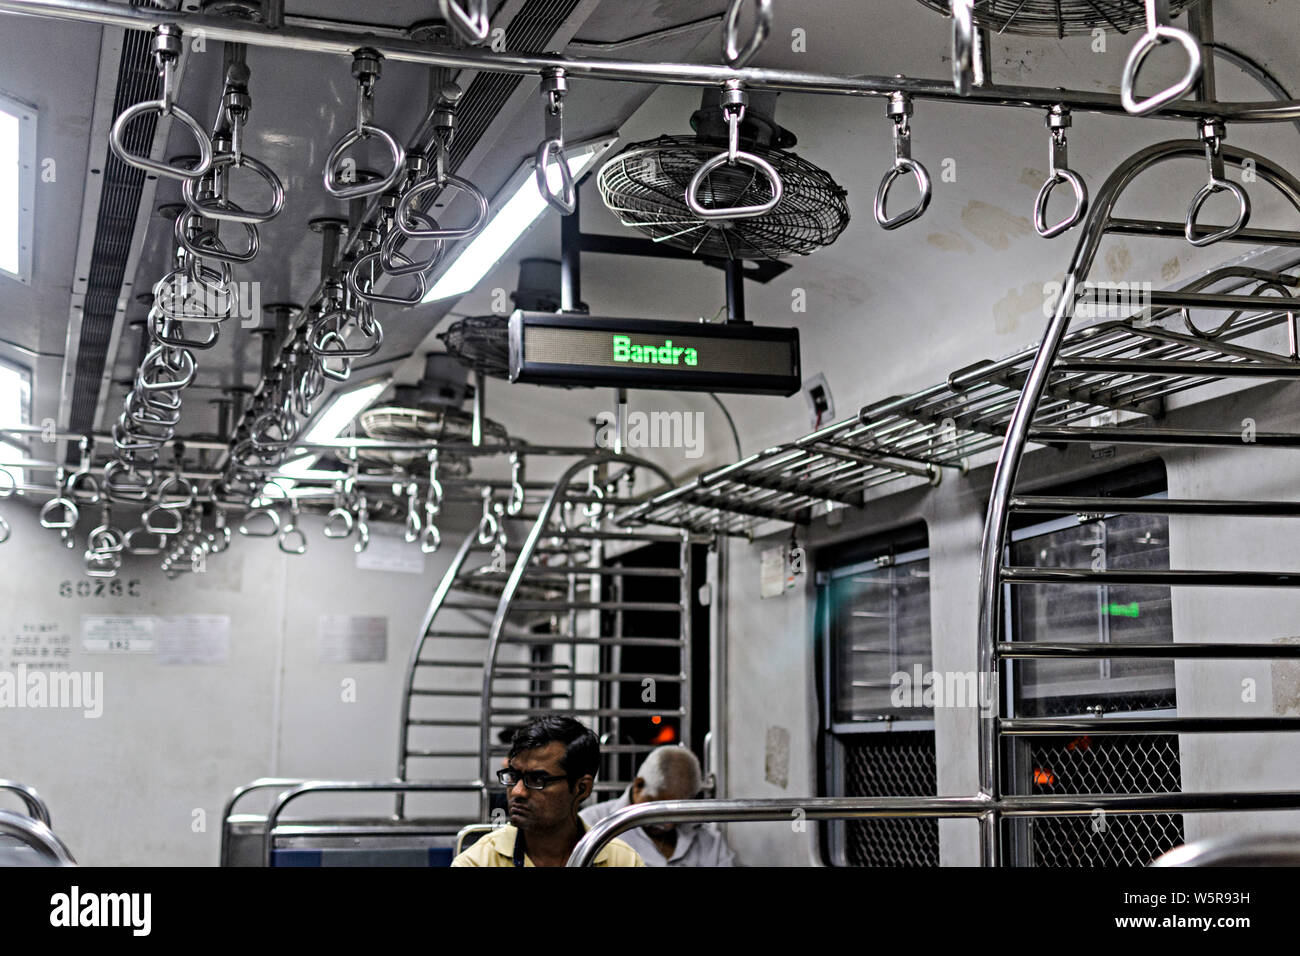 indicator in train Bandra Railway Station Mumbai Maharashtra India Asia Stock Photo